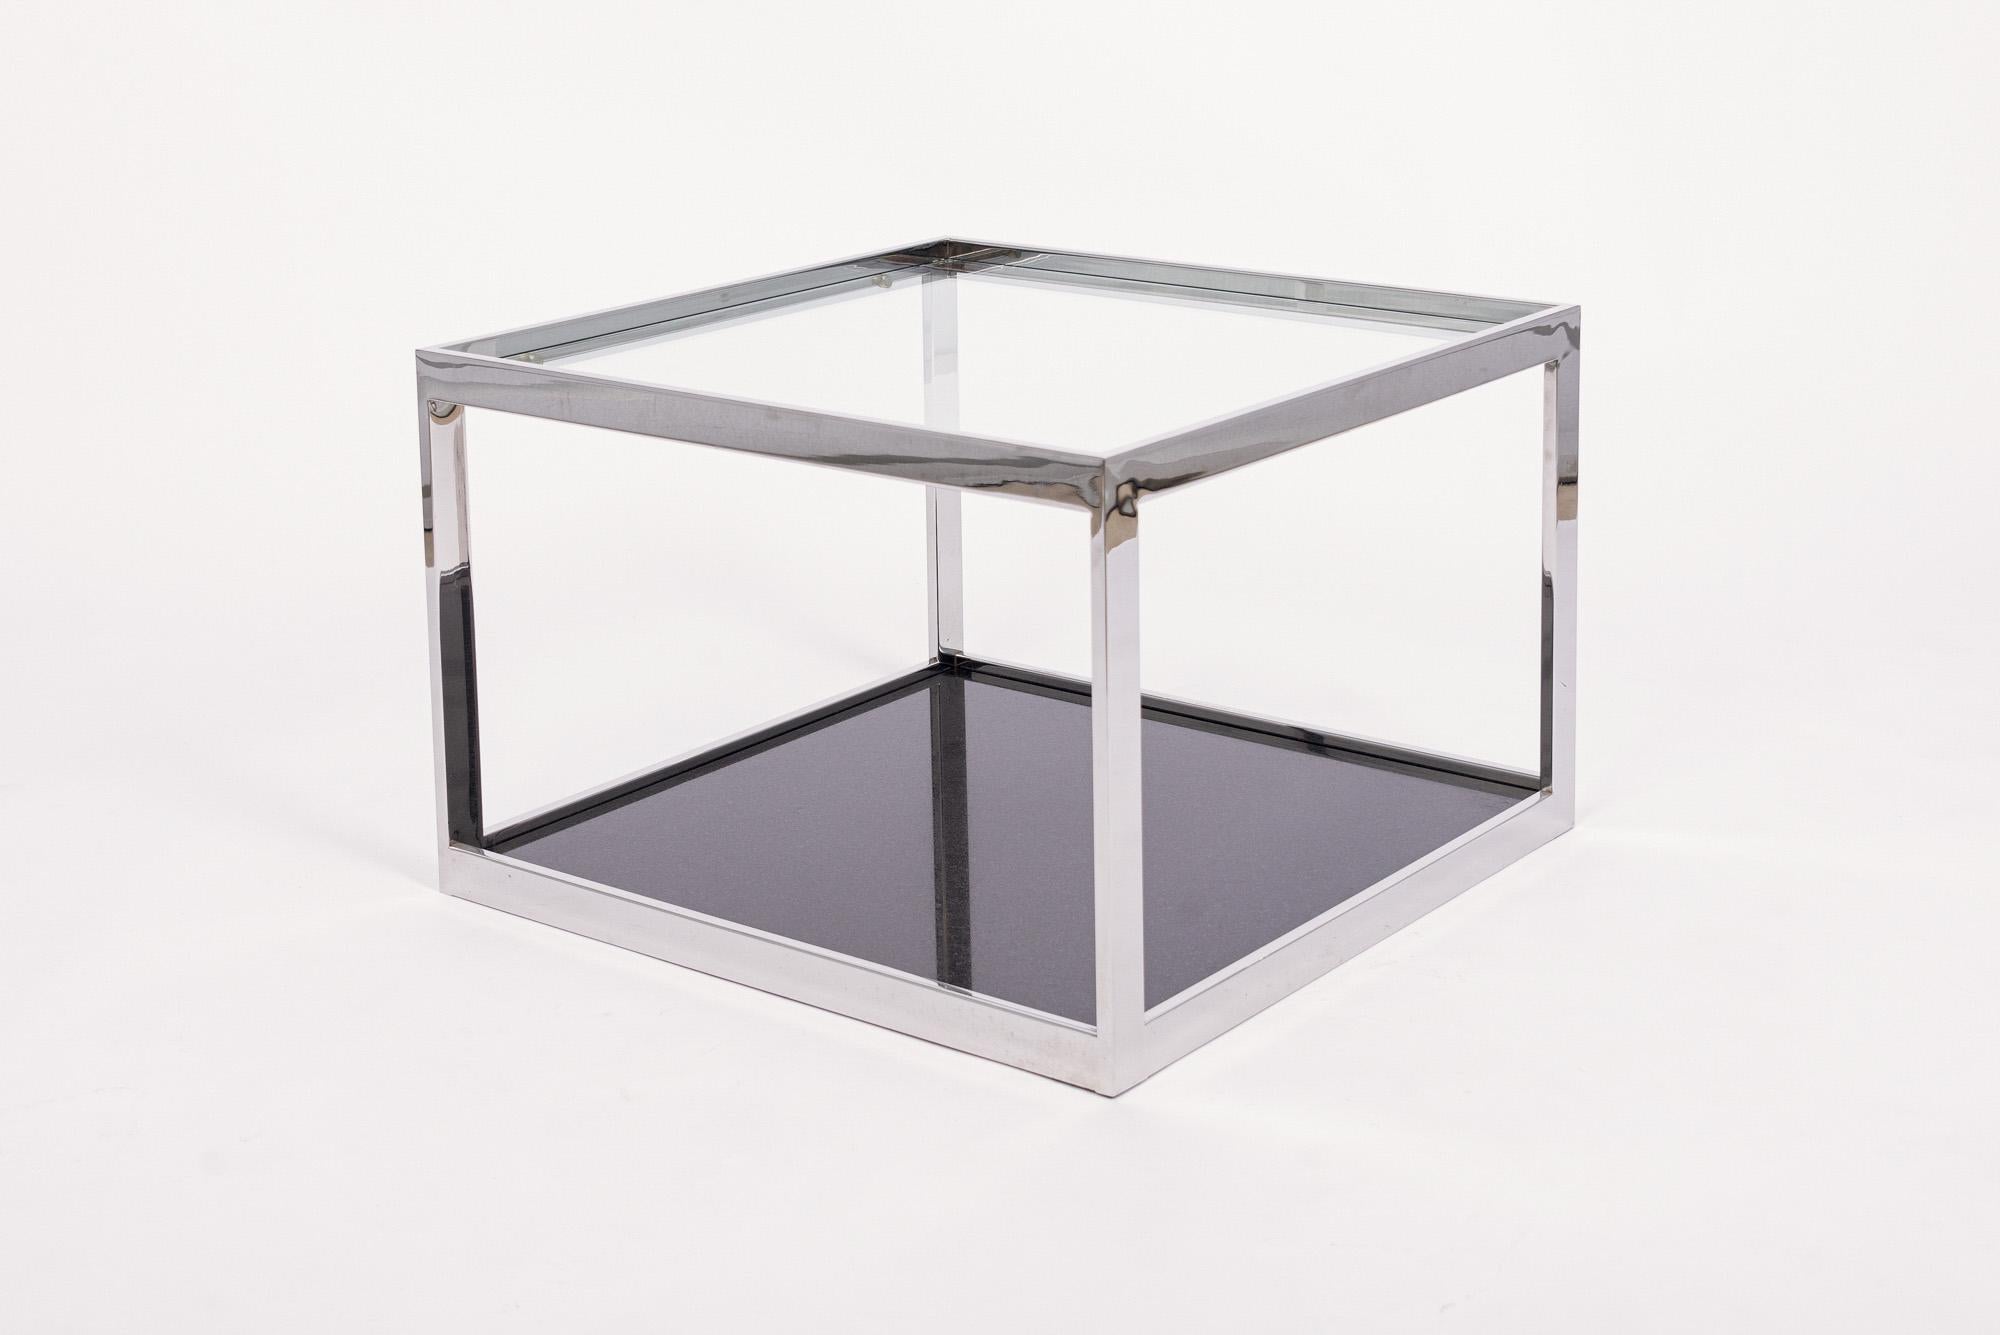 Cette table d'appoint vintage de style Milo ByCA date d'environ 1970. Cette table d'appoint carrée au design épuré et minimaliste est dotée d'un cadre chromé à barre plate, d'un plateau en verre épais et d'un lourd piètement en marbre noir. Le